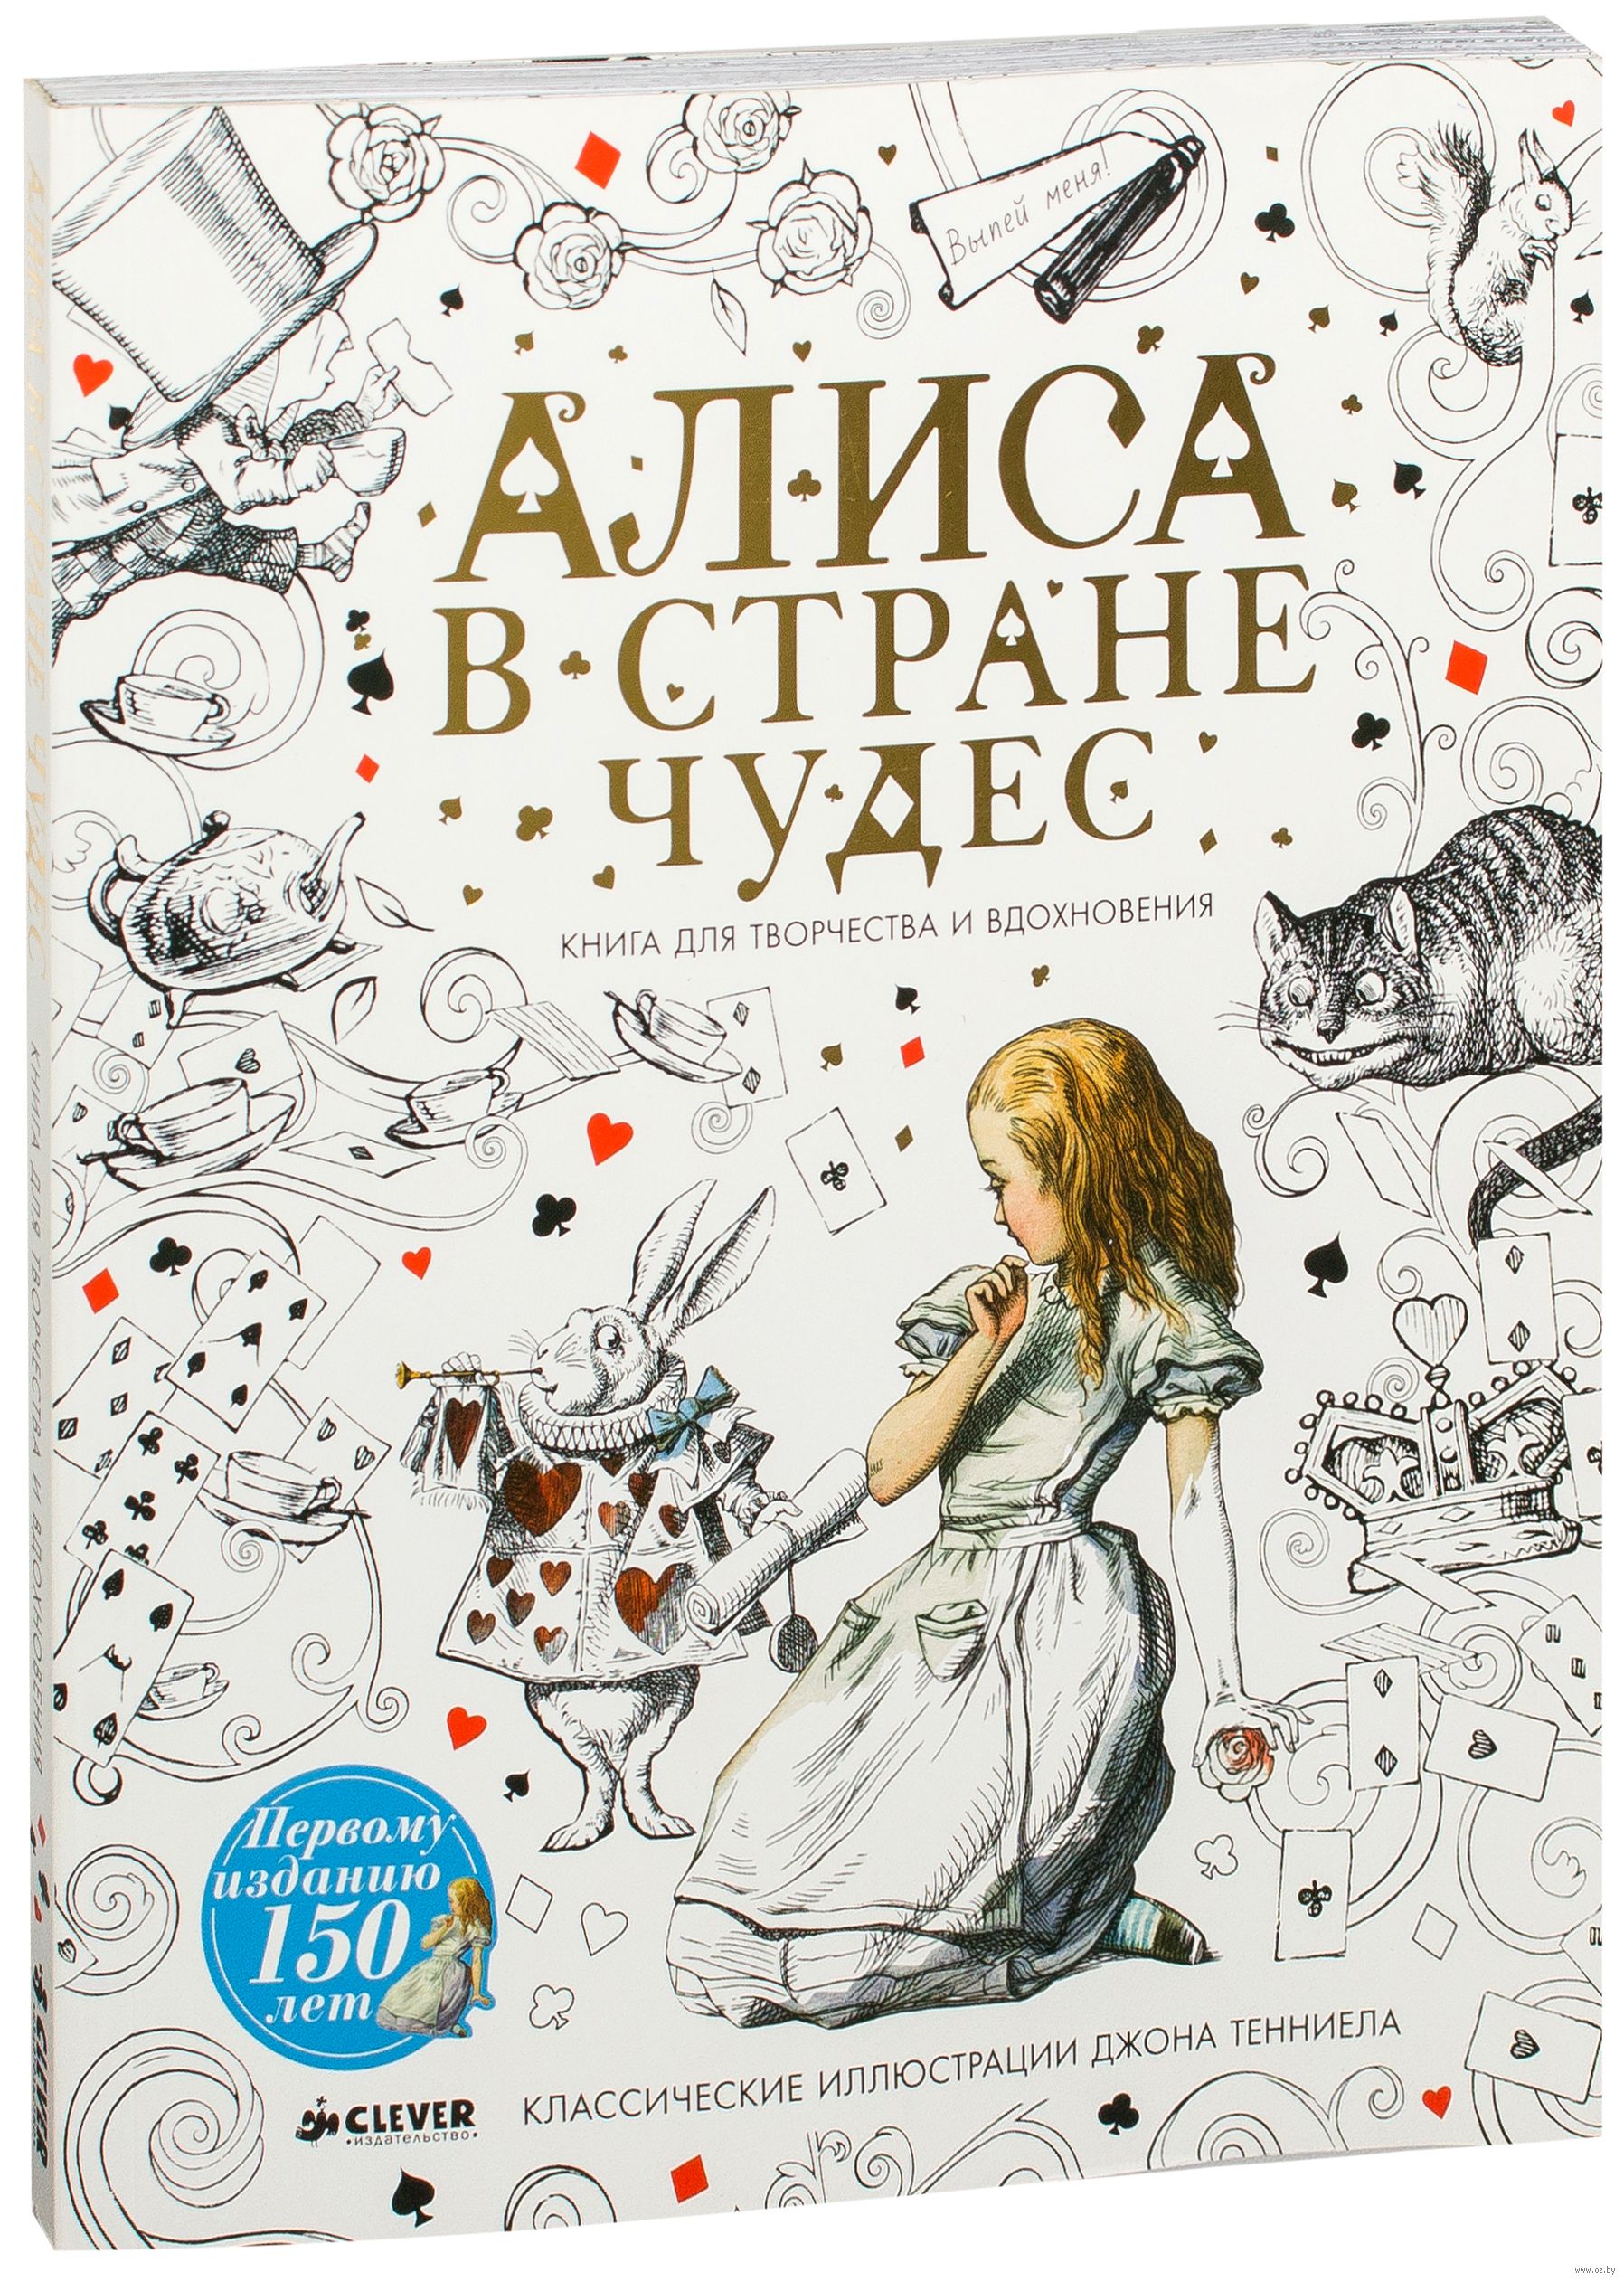 Алиса в стране чудес учебник. Алиса в стране чудес обложка книги. Алиса в стране чудес книга для творчества. Алиса в стране чудес книга обложка красивая. Алиса в стране чудес иллюстрации обложка книги.